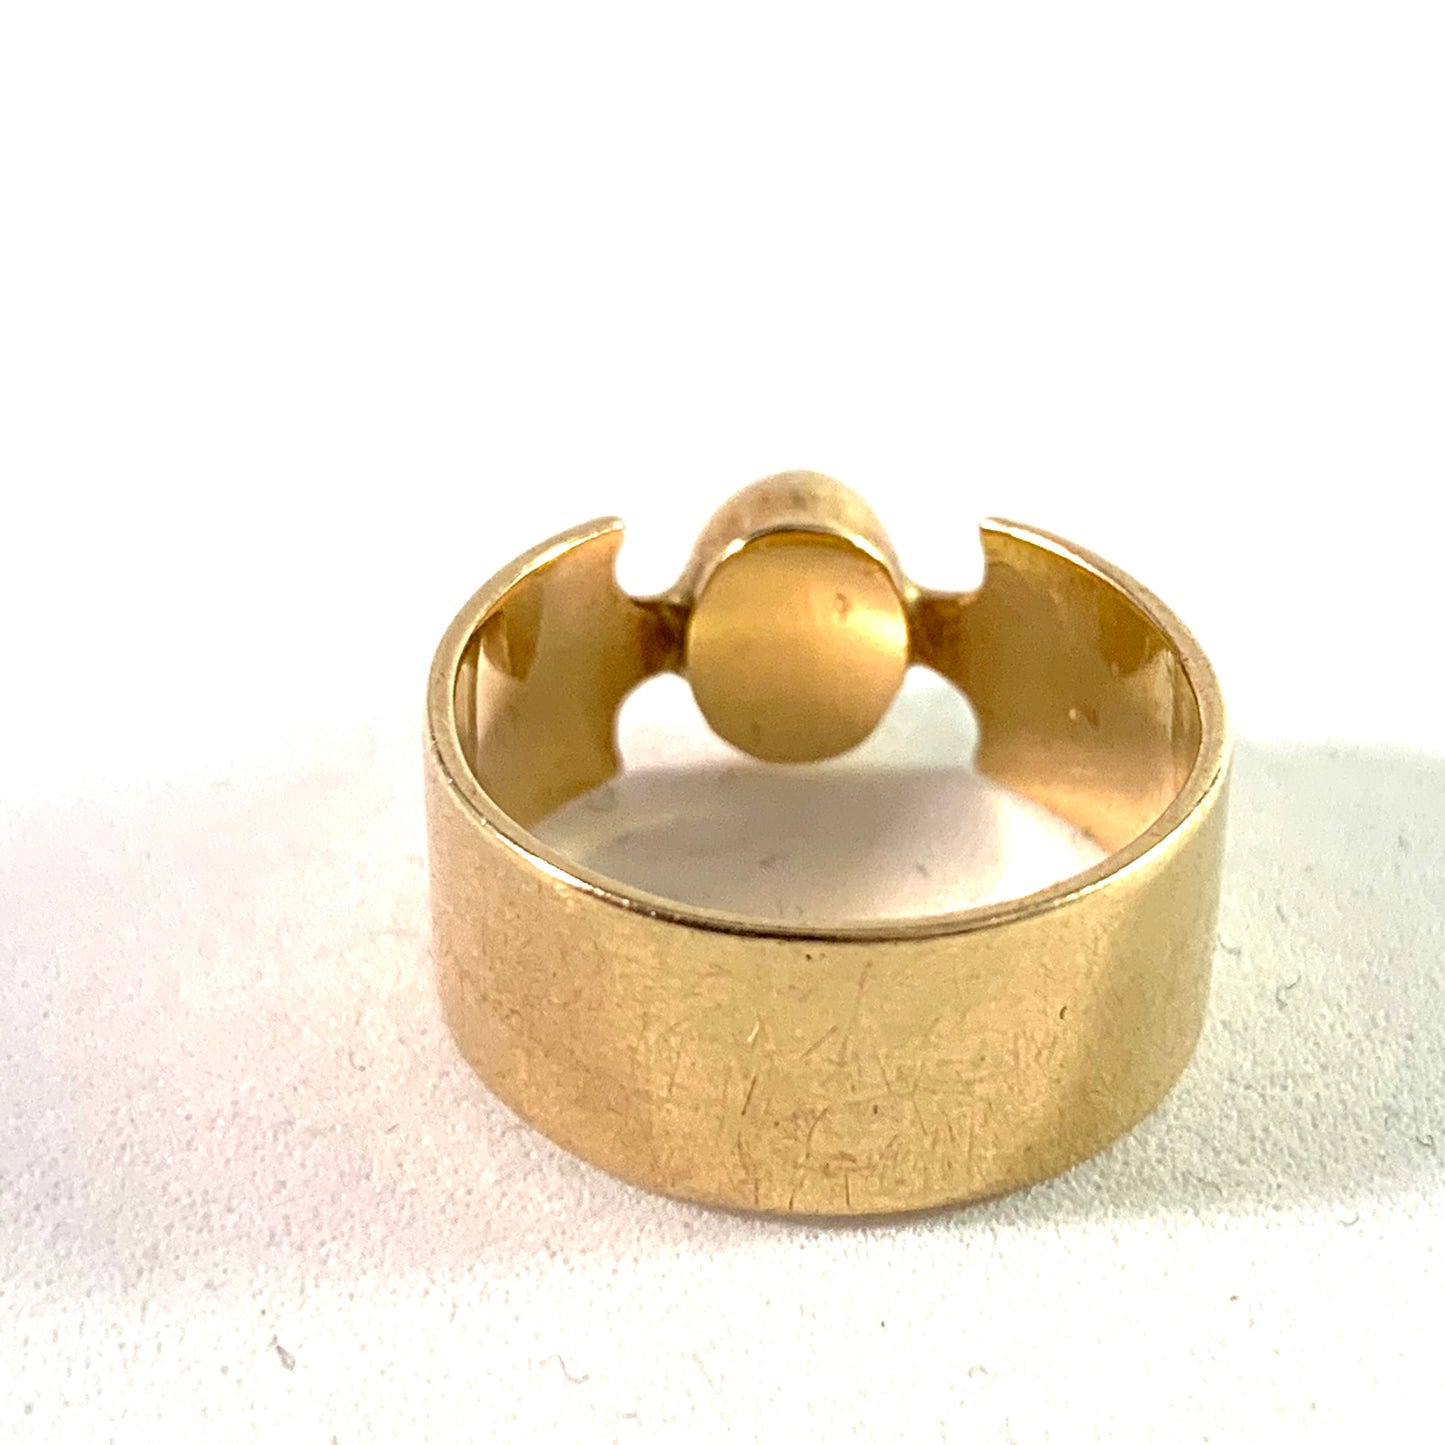 Maker SS, Denmark Vintage 14k Gold Turquoise Ring